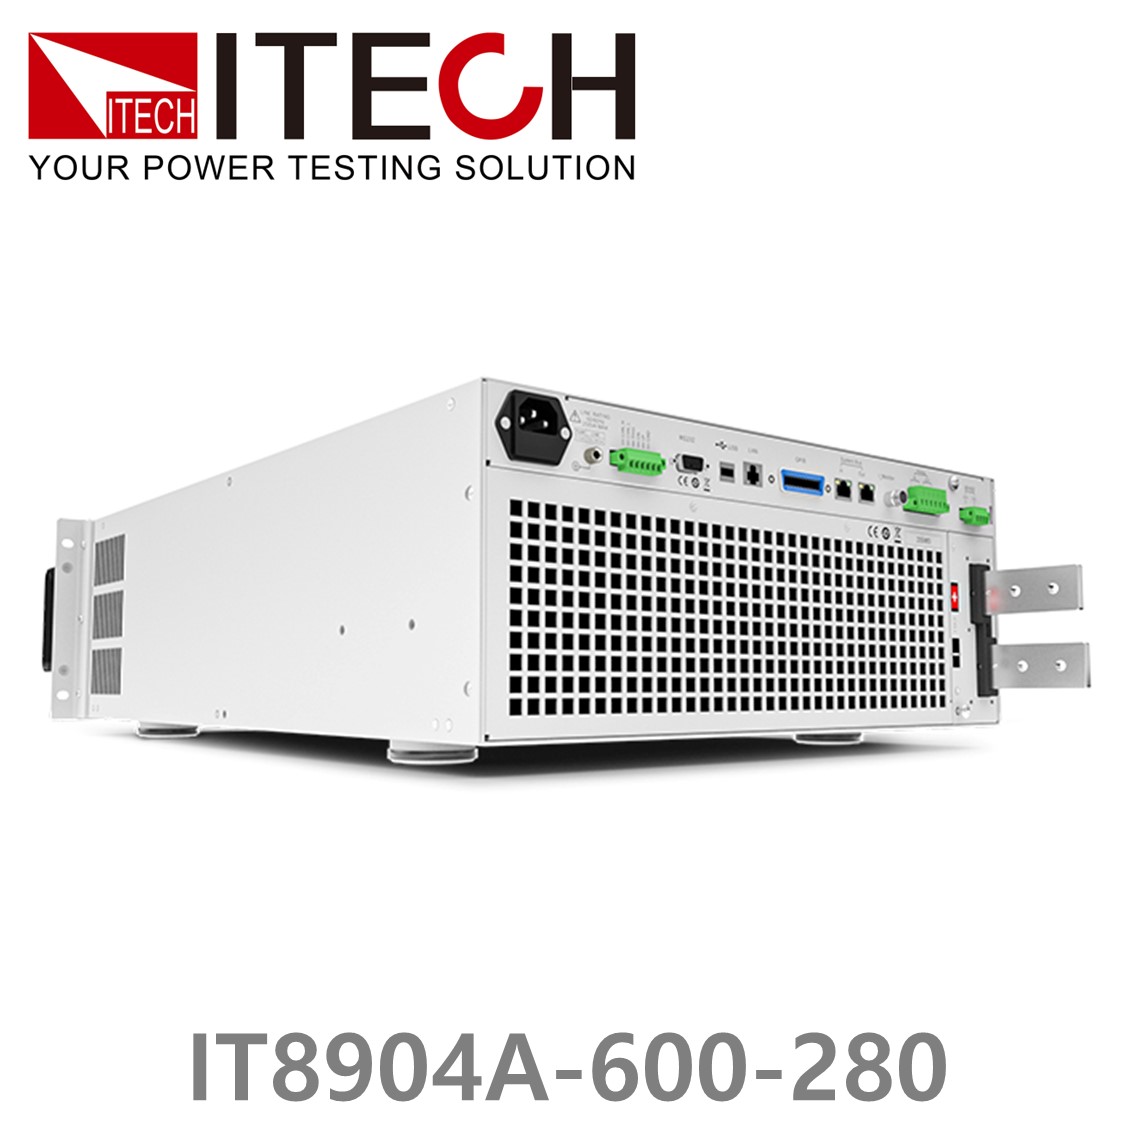 [ ITECH ] IT8904A-600-280  고성능 고전력 DC 전자로드 600V/280A/4kW (4U)